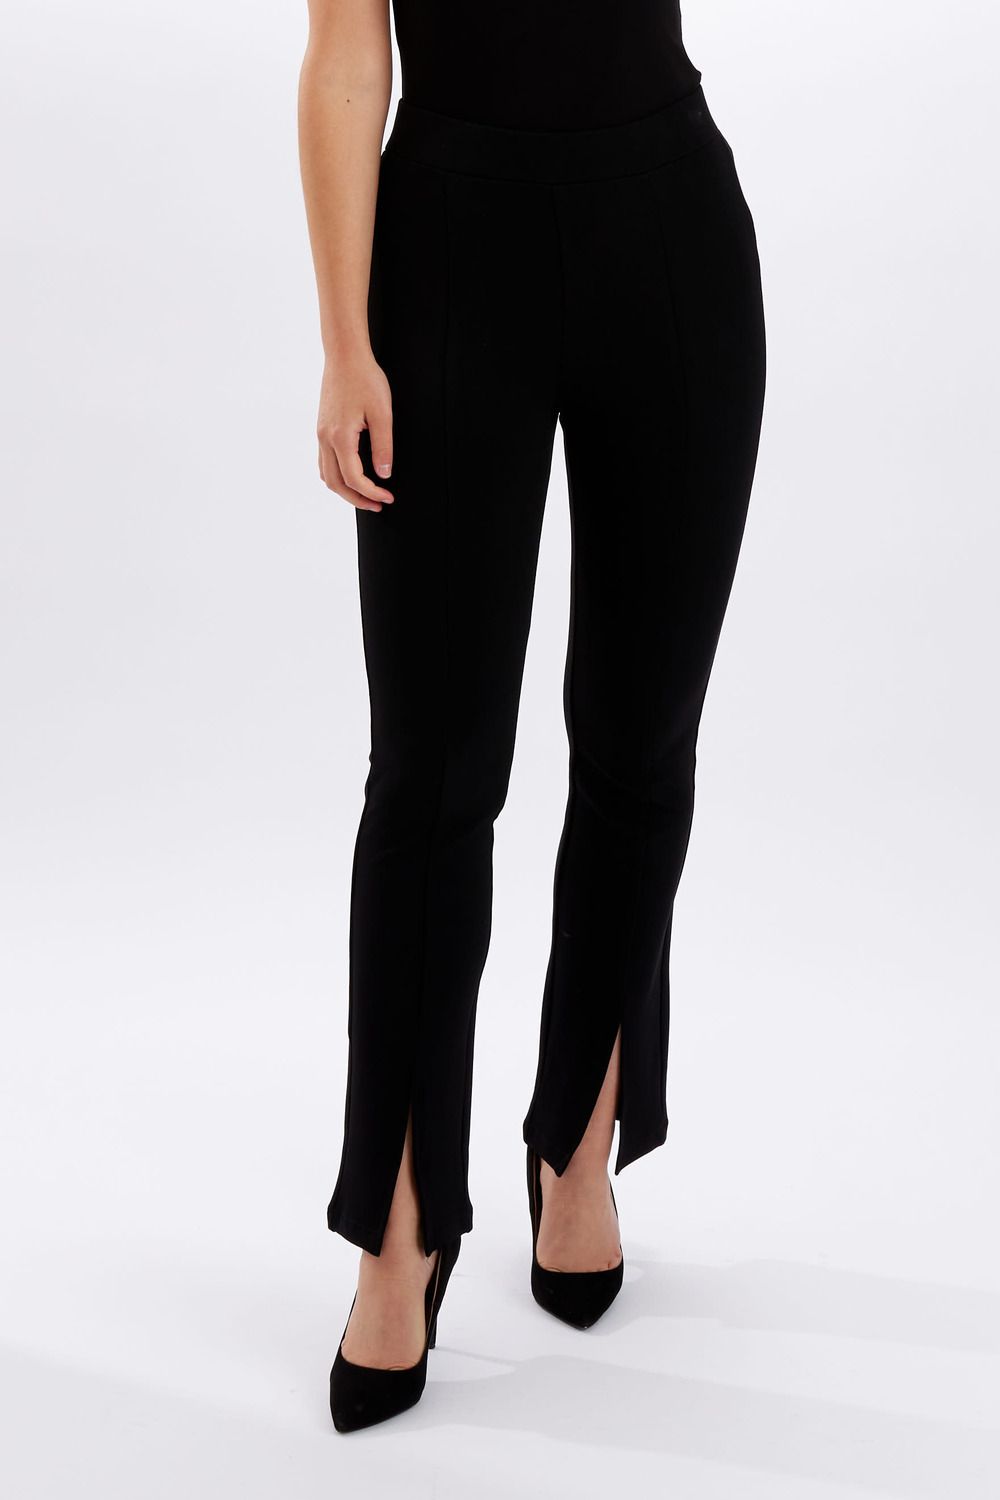 Pantalon fendu, coutures verticales modèle 246228U. Noir